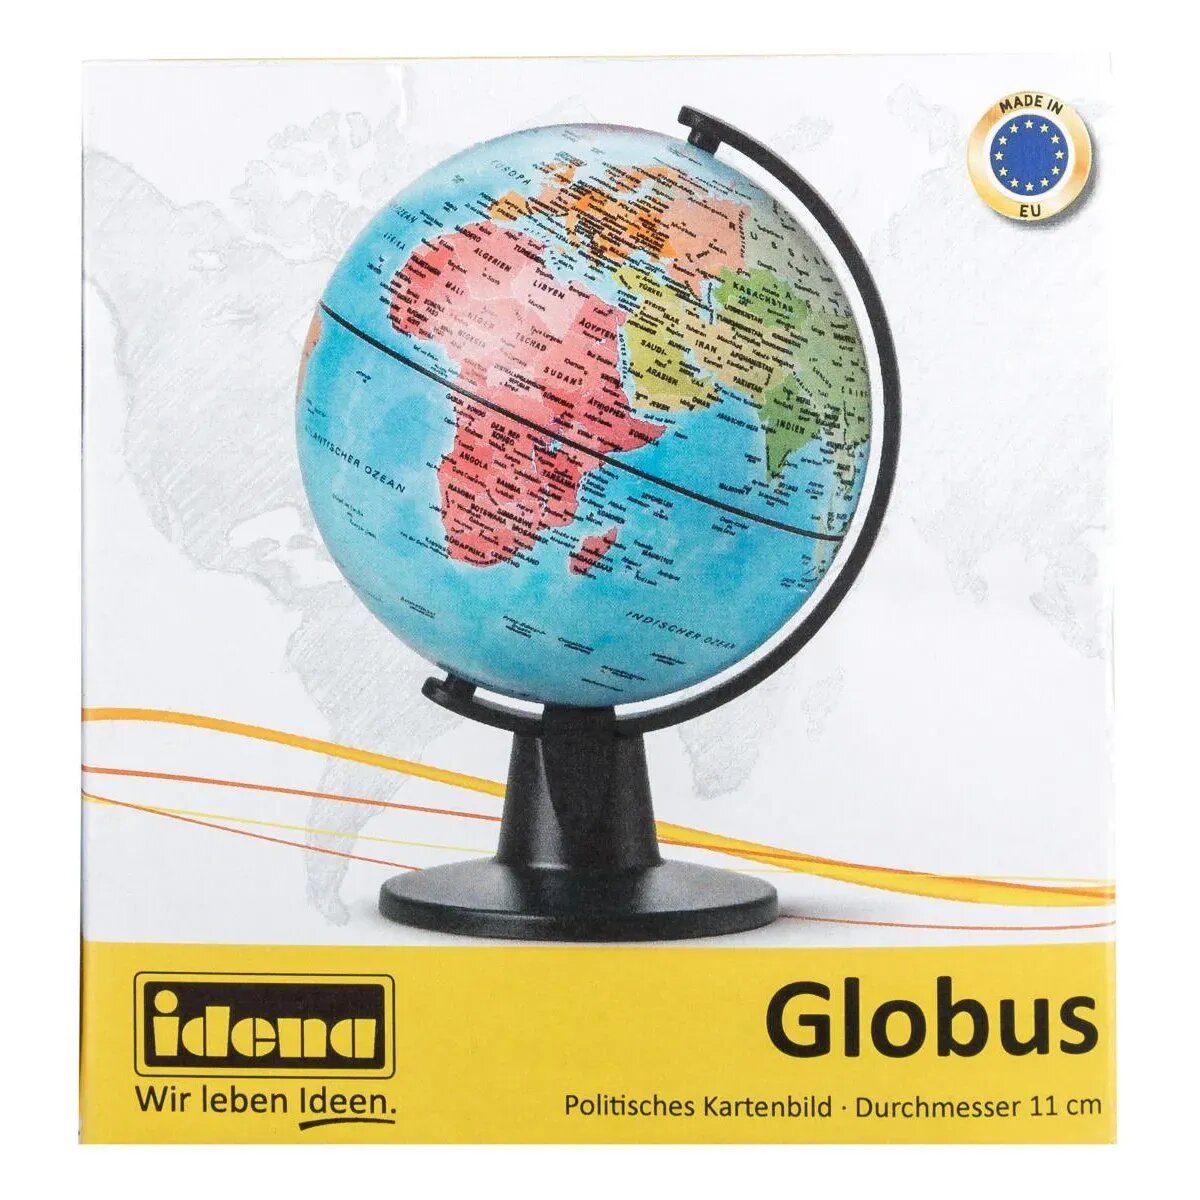 Idena Globus, Ø 11 cm, mit politischem Kartenbild